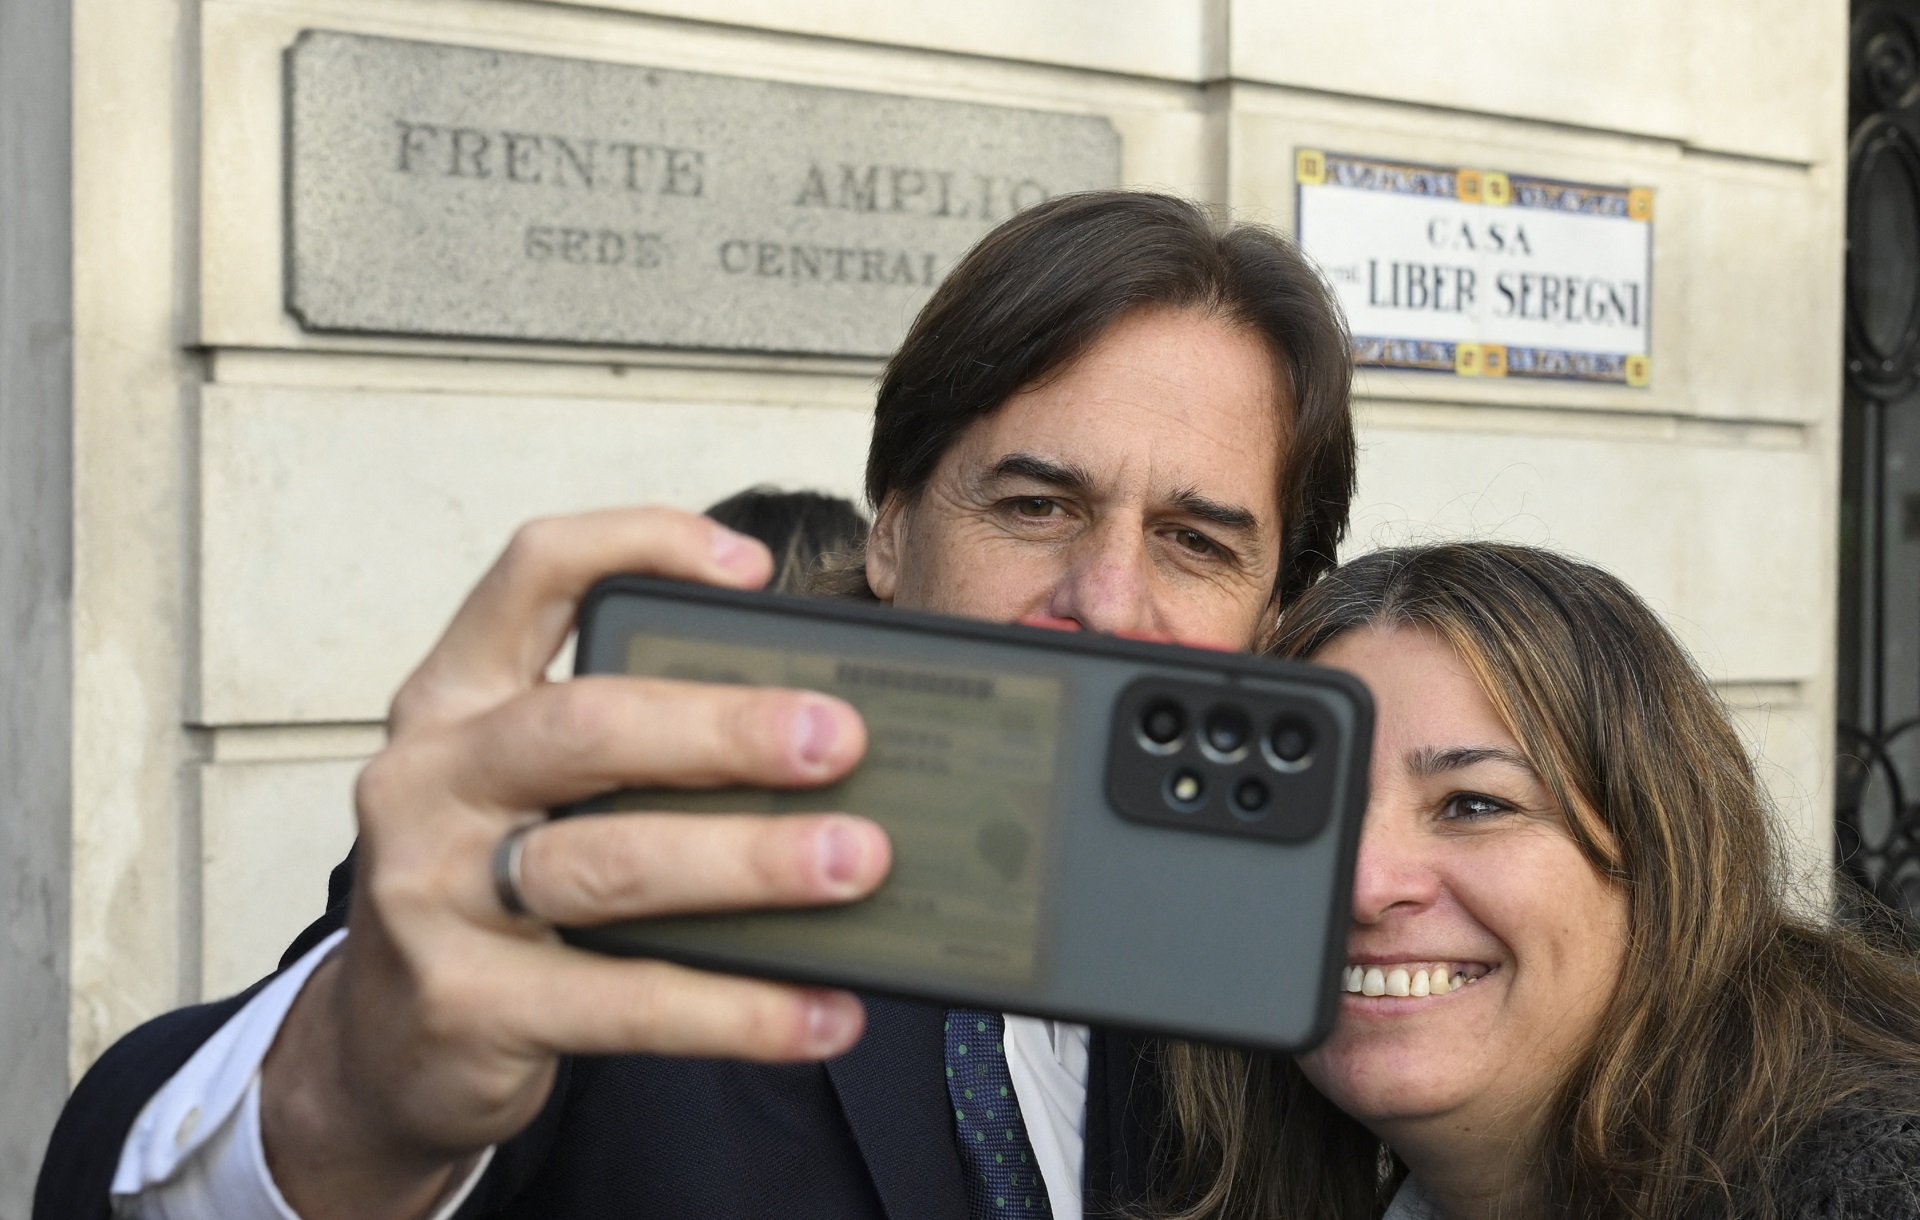 El momento capturado por la agencia AFP muestra al mandatario sacando él mismo la selfie con el teléfono de una mujer, militante opositora. De fondo, las placas dicen: “Frente Amplio, sede central” y “Casa Liber Seregni”.